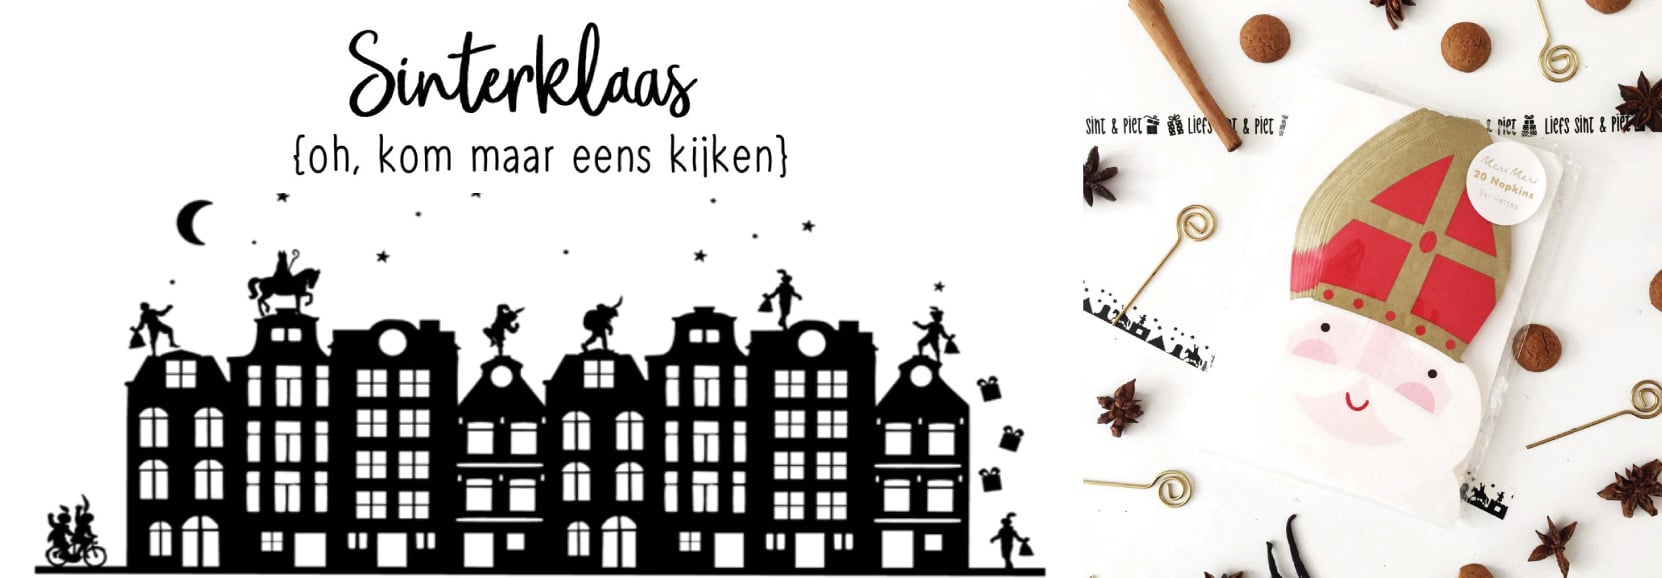 Geweldige eik creëren Waar Sinterklaas versiering | Jetjesenjobjes.nl - Jetjes & Jobjes